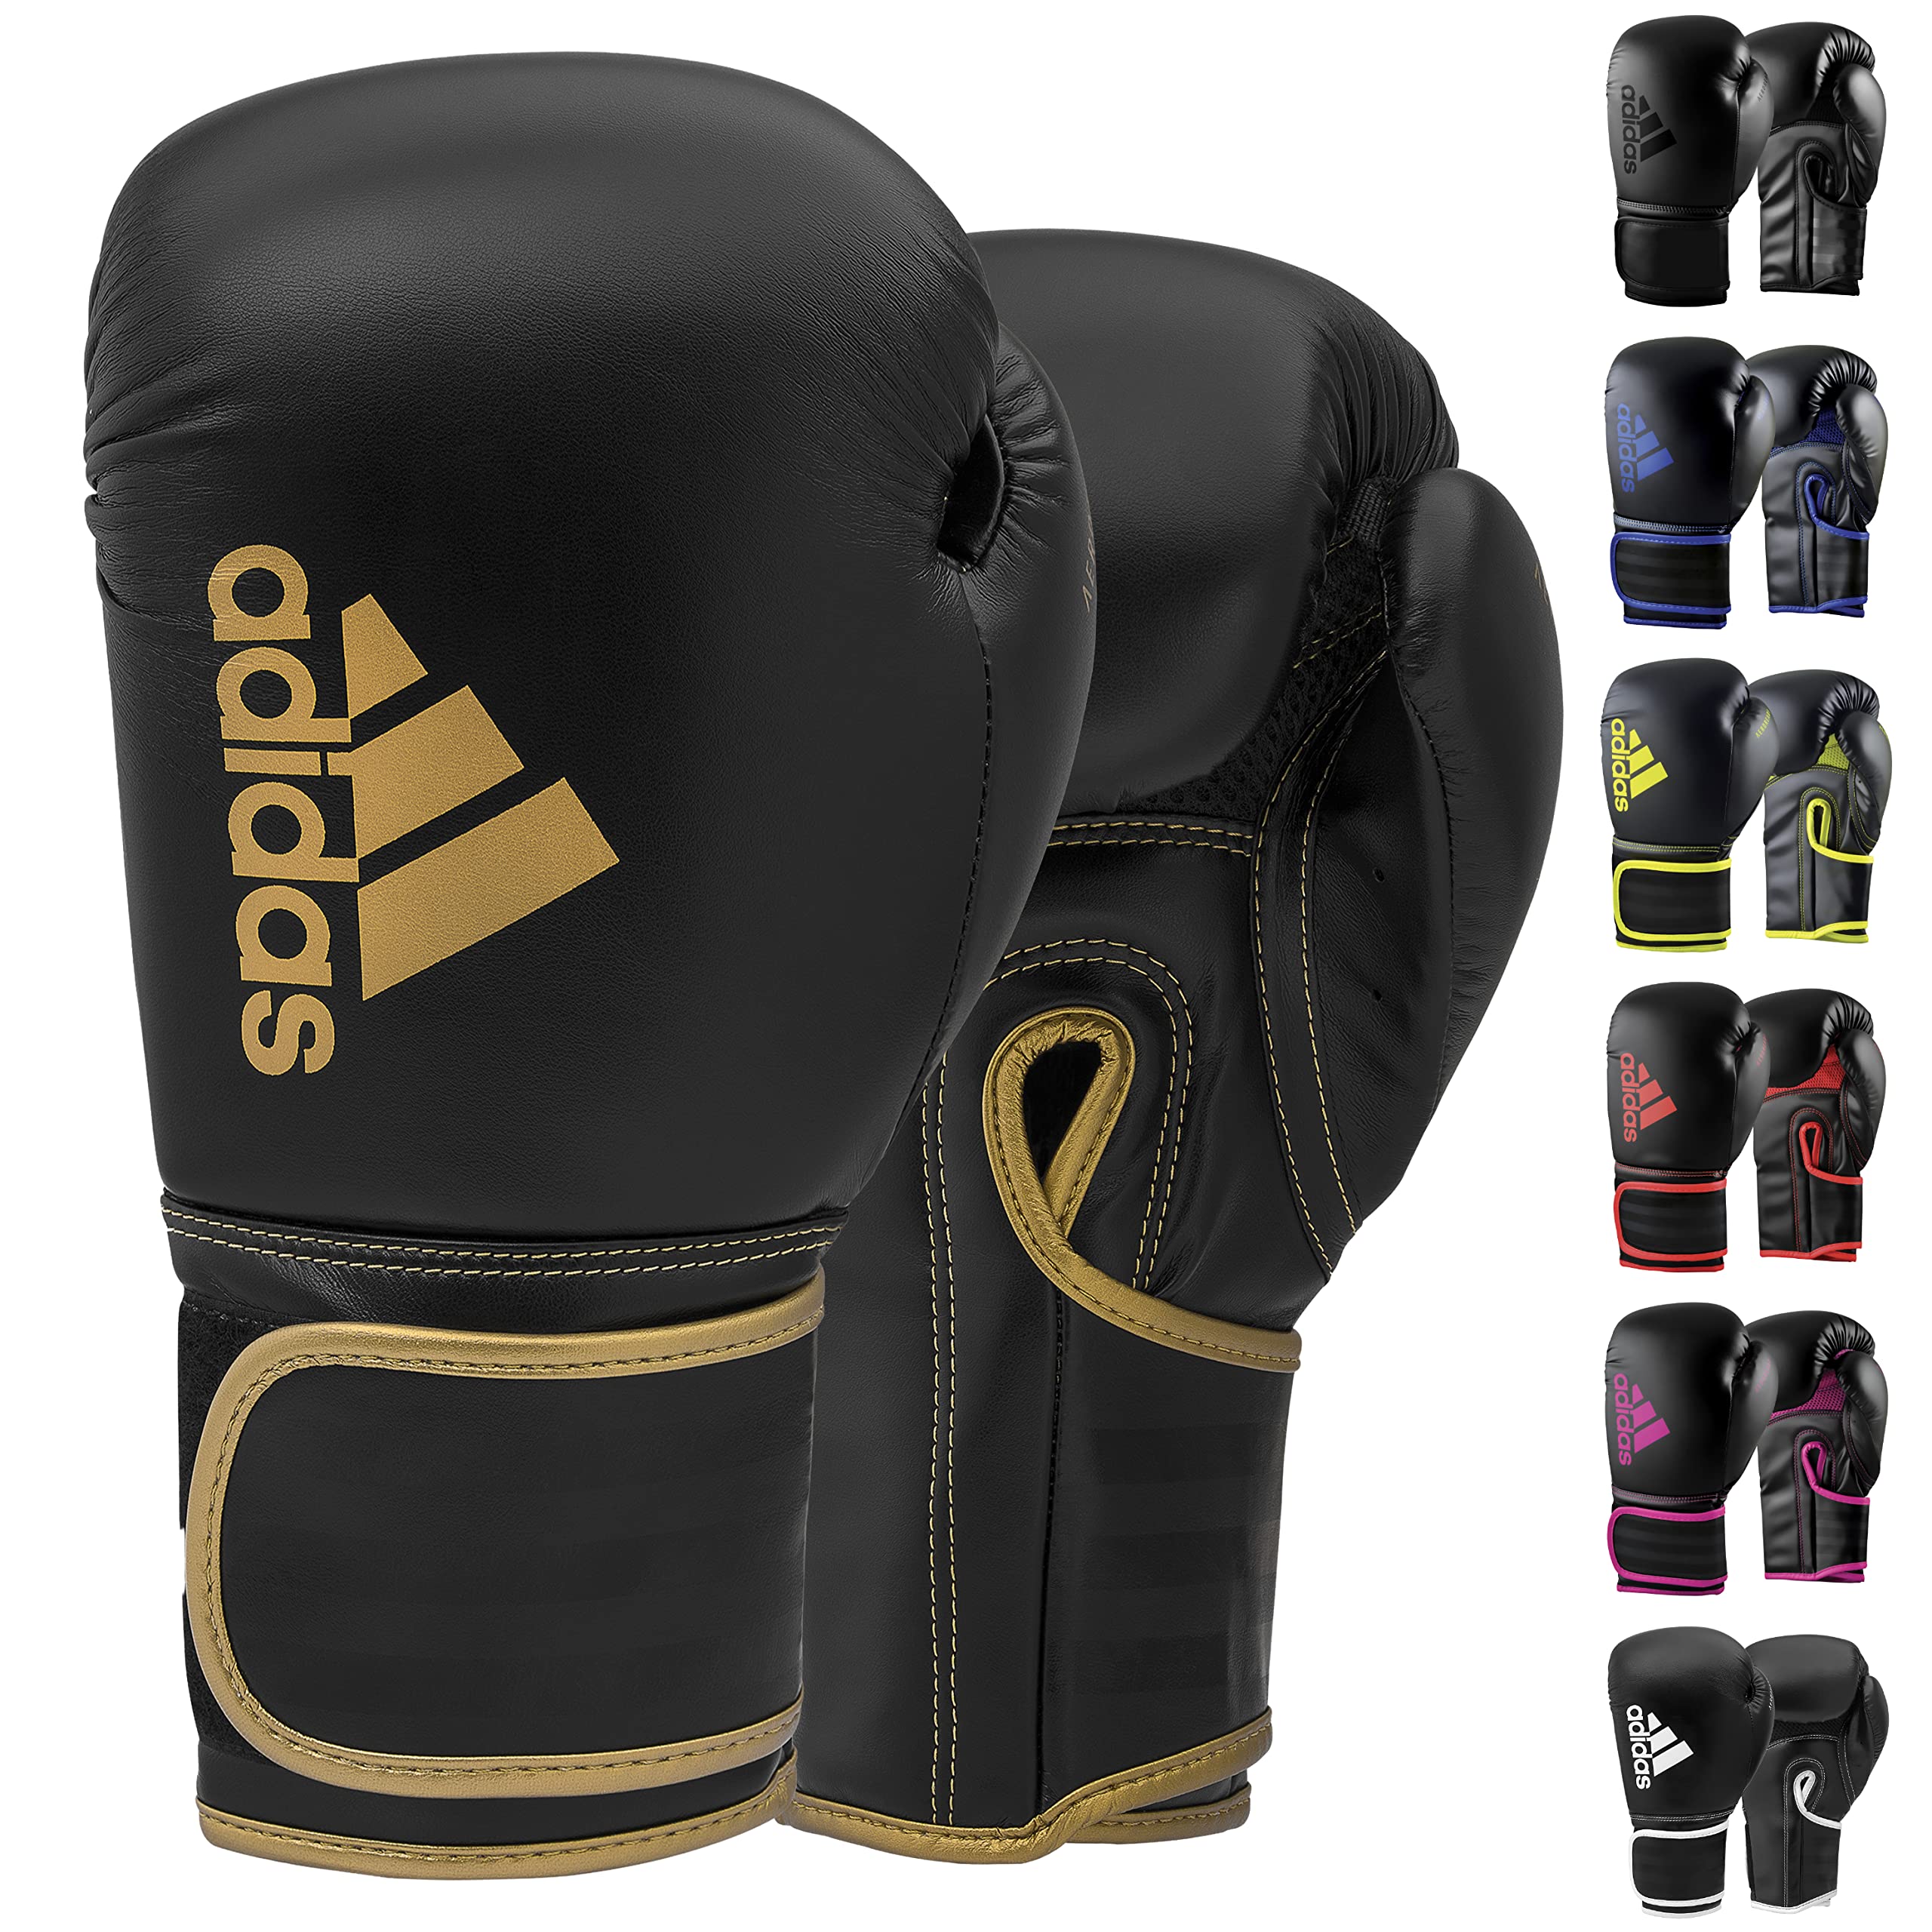 Adidas Boxing Gloves - Hybrid & Women Boxing Training Black/Gold Men, Kids Bag, - 80 Boxing, & for 12oz MMA, - Kickboxing, Gloves for Fitness